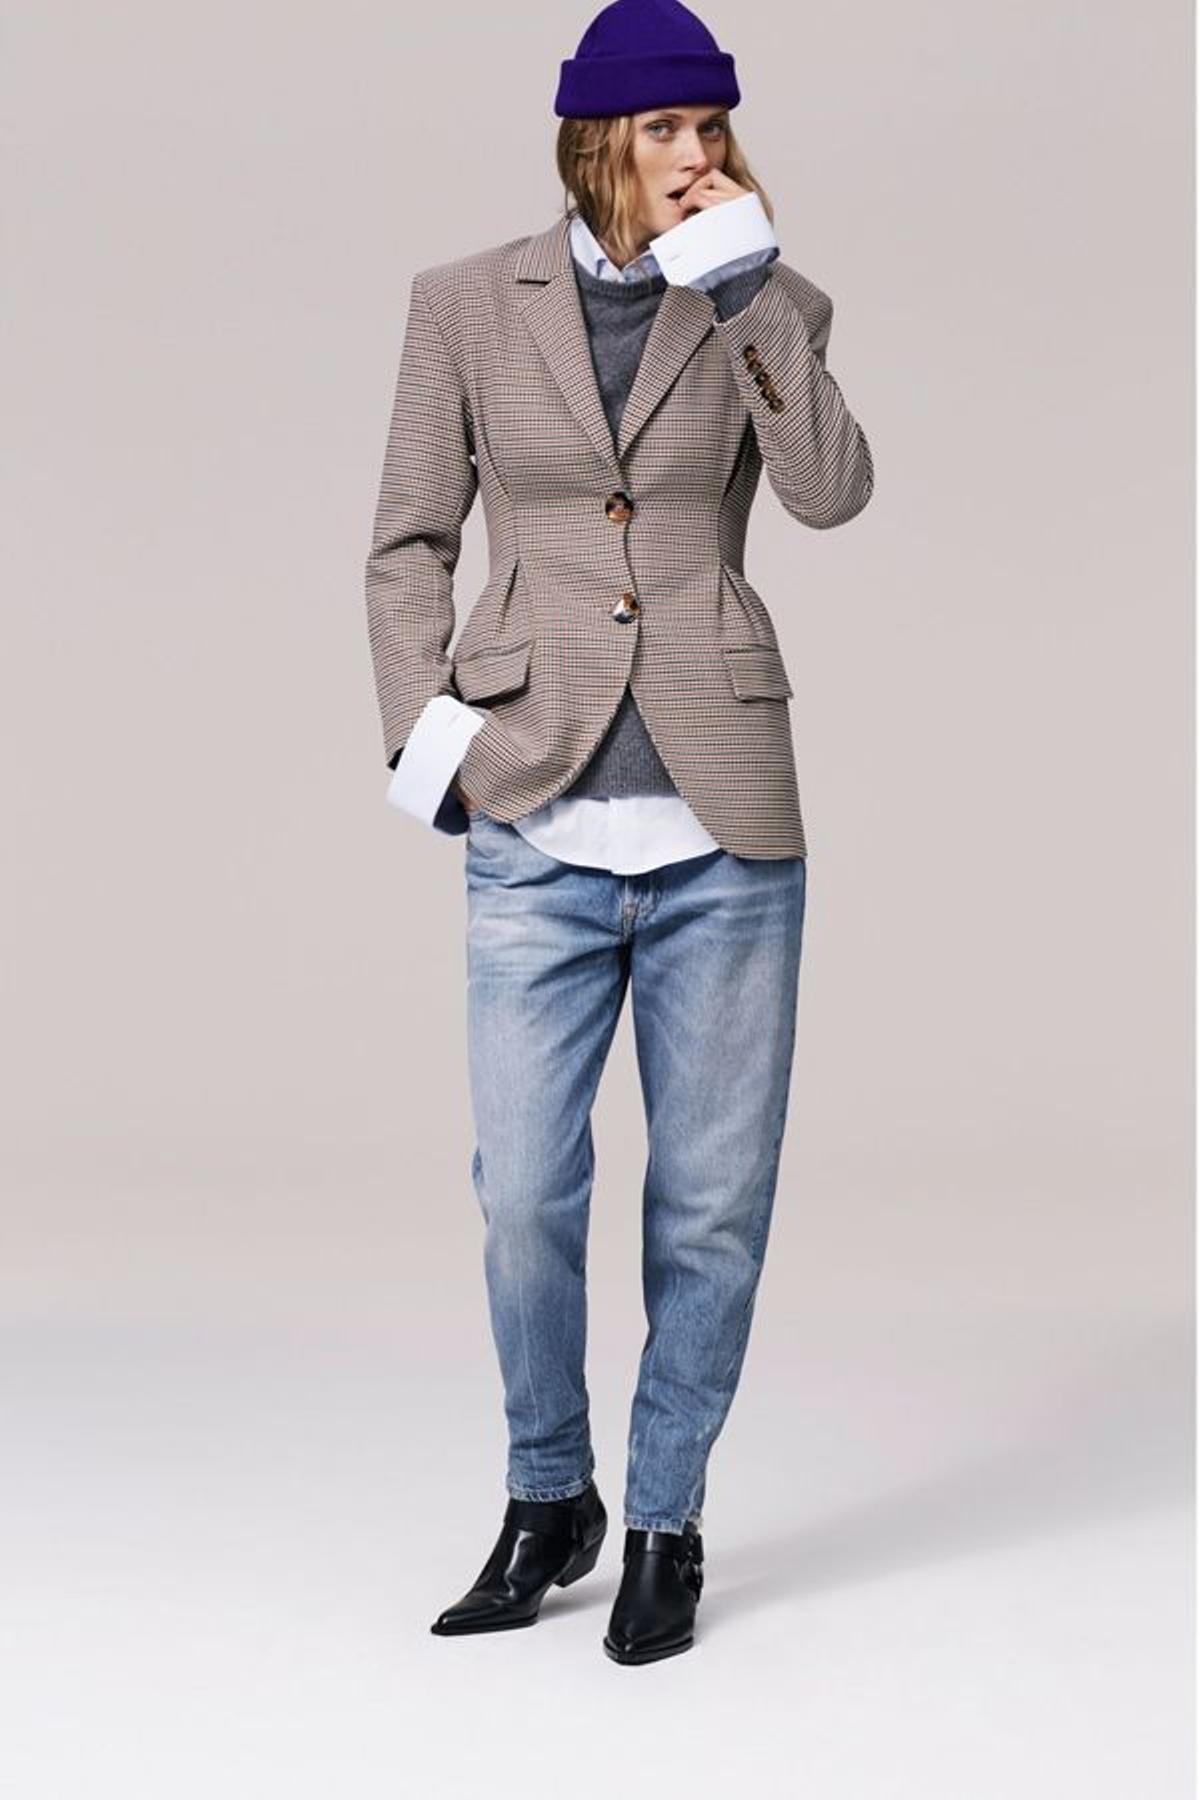 Campaña timeless de Zara: modelo con blazer, camisa y jeans masculinos